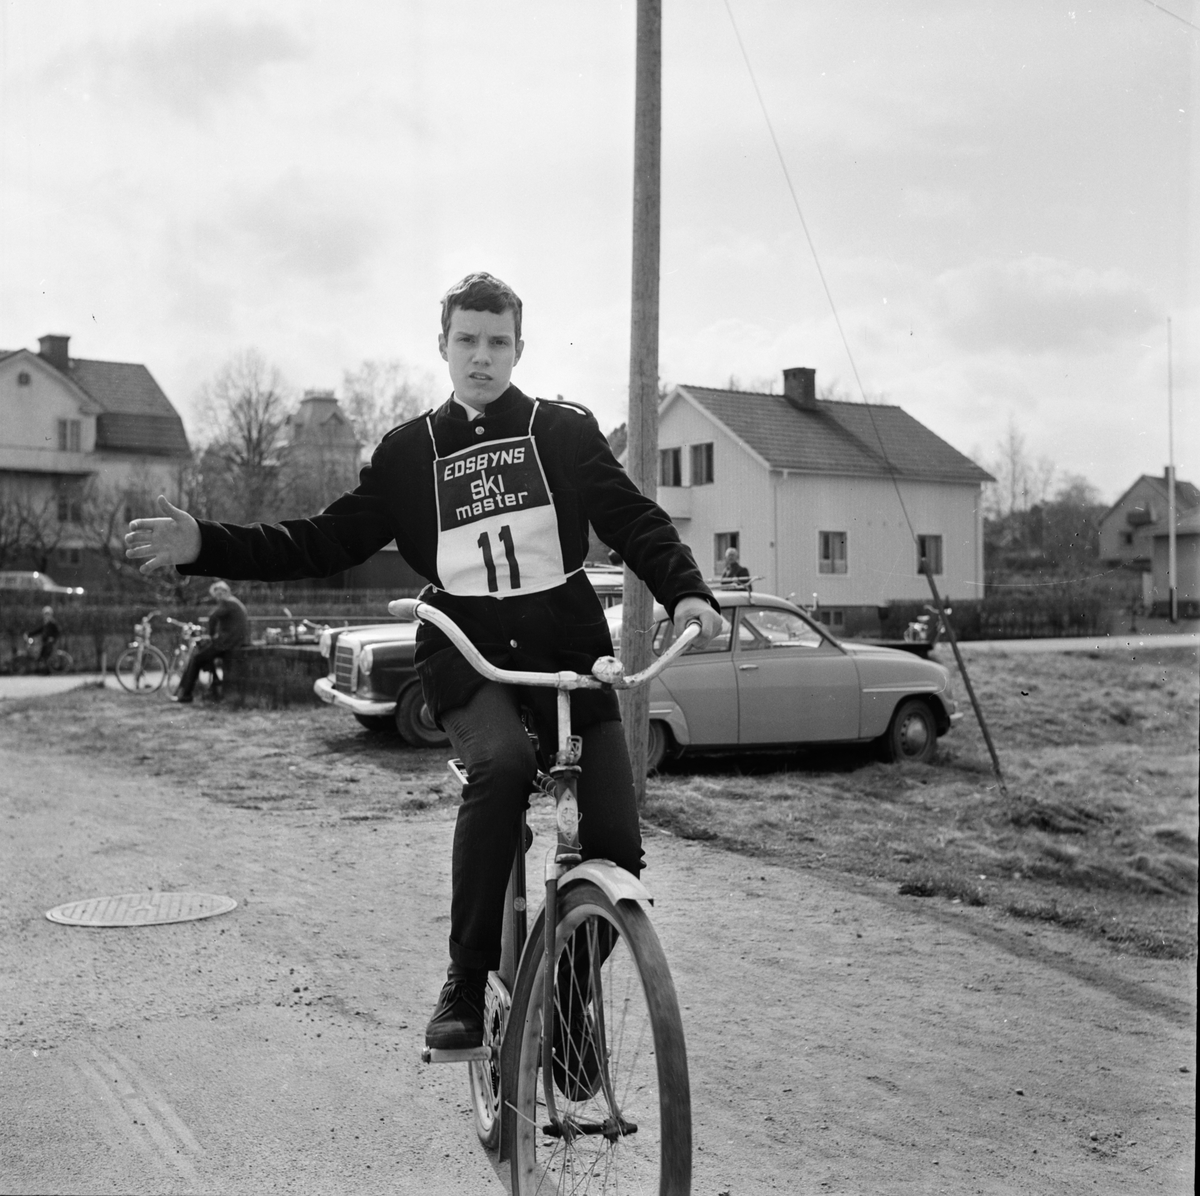 Trafik rikstävling länsfinal i Bollnäs. 9/5-1967
1. Anders Sundberg  Alfta
5. Karin Nilsson  Hamre
6. Göran Lindqvist  Häggesta.
